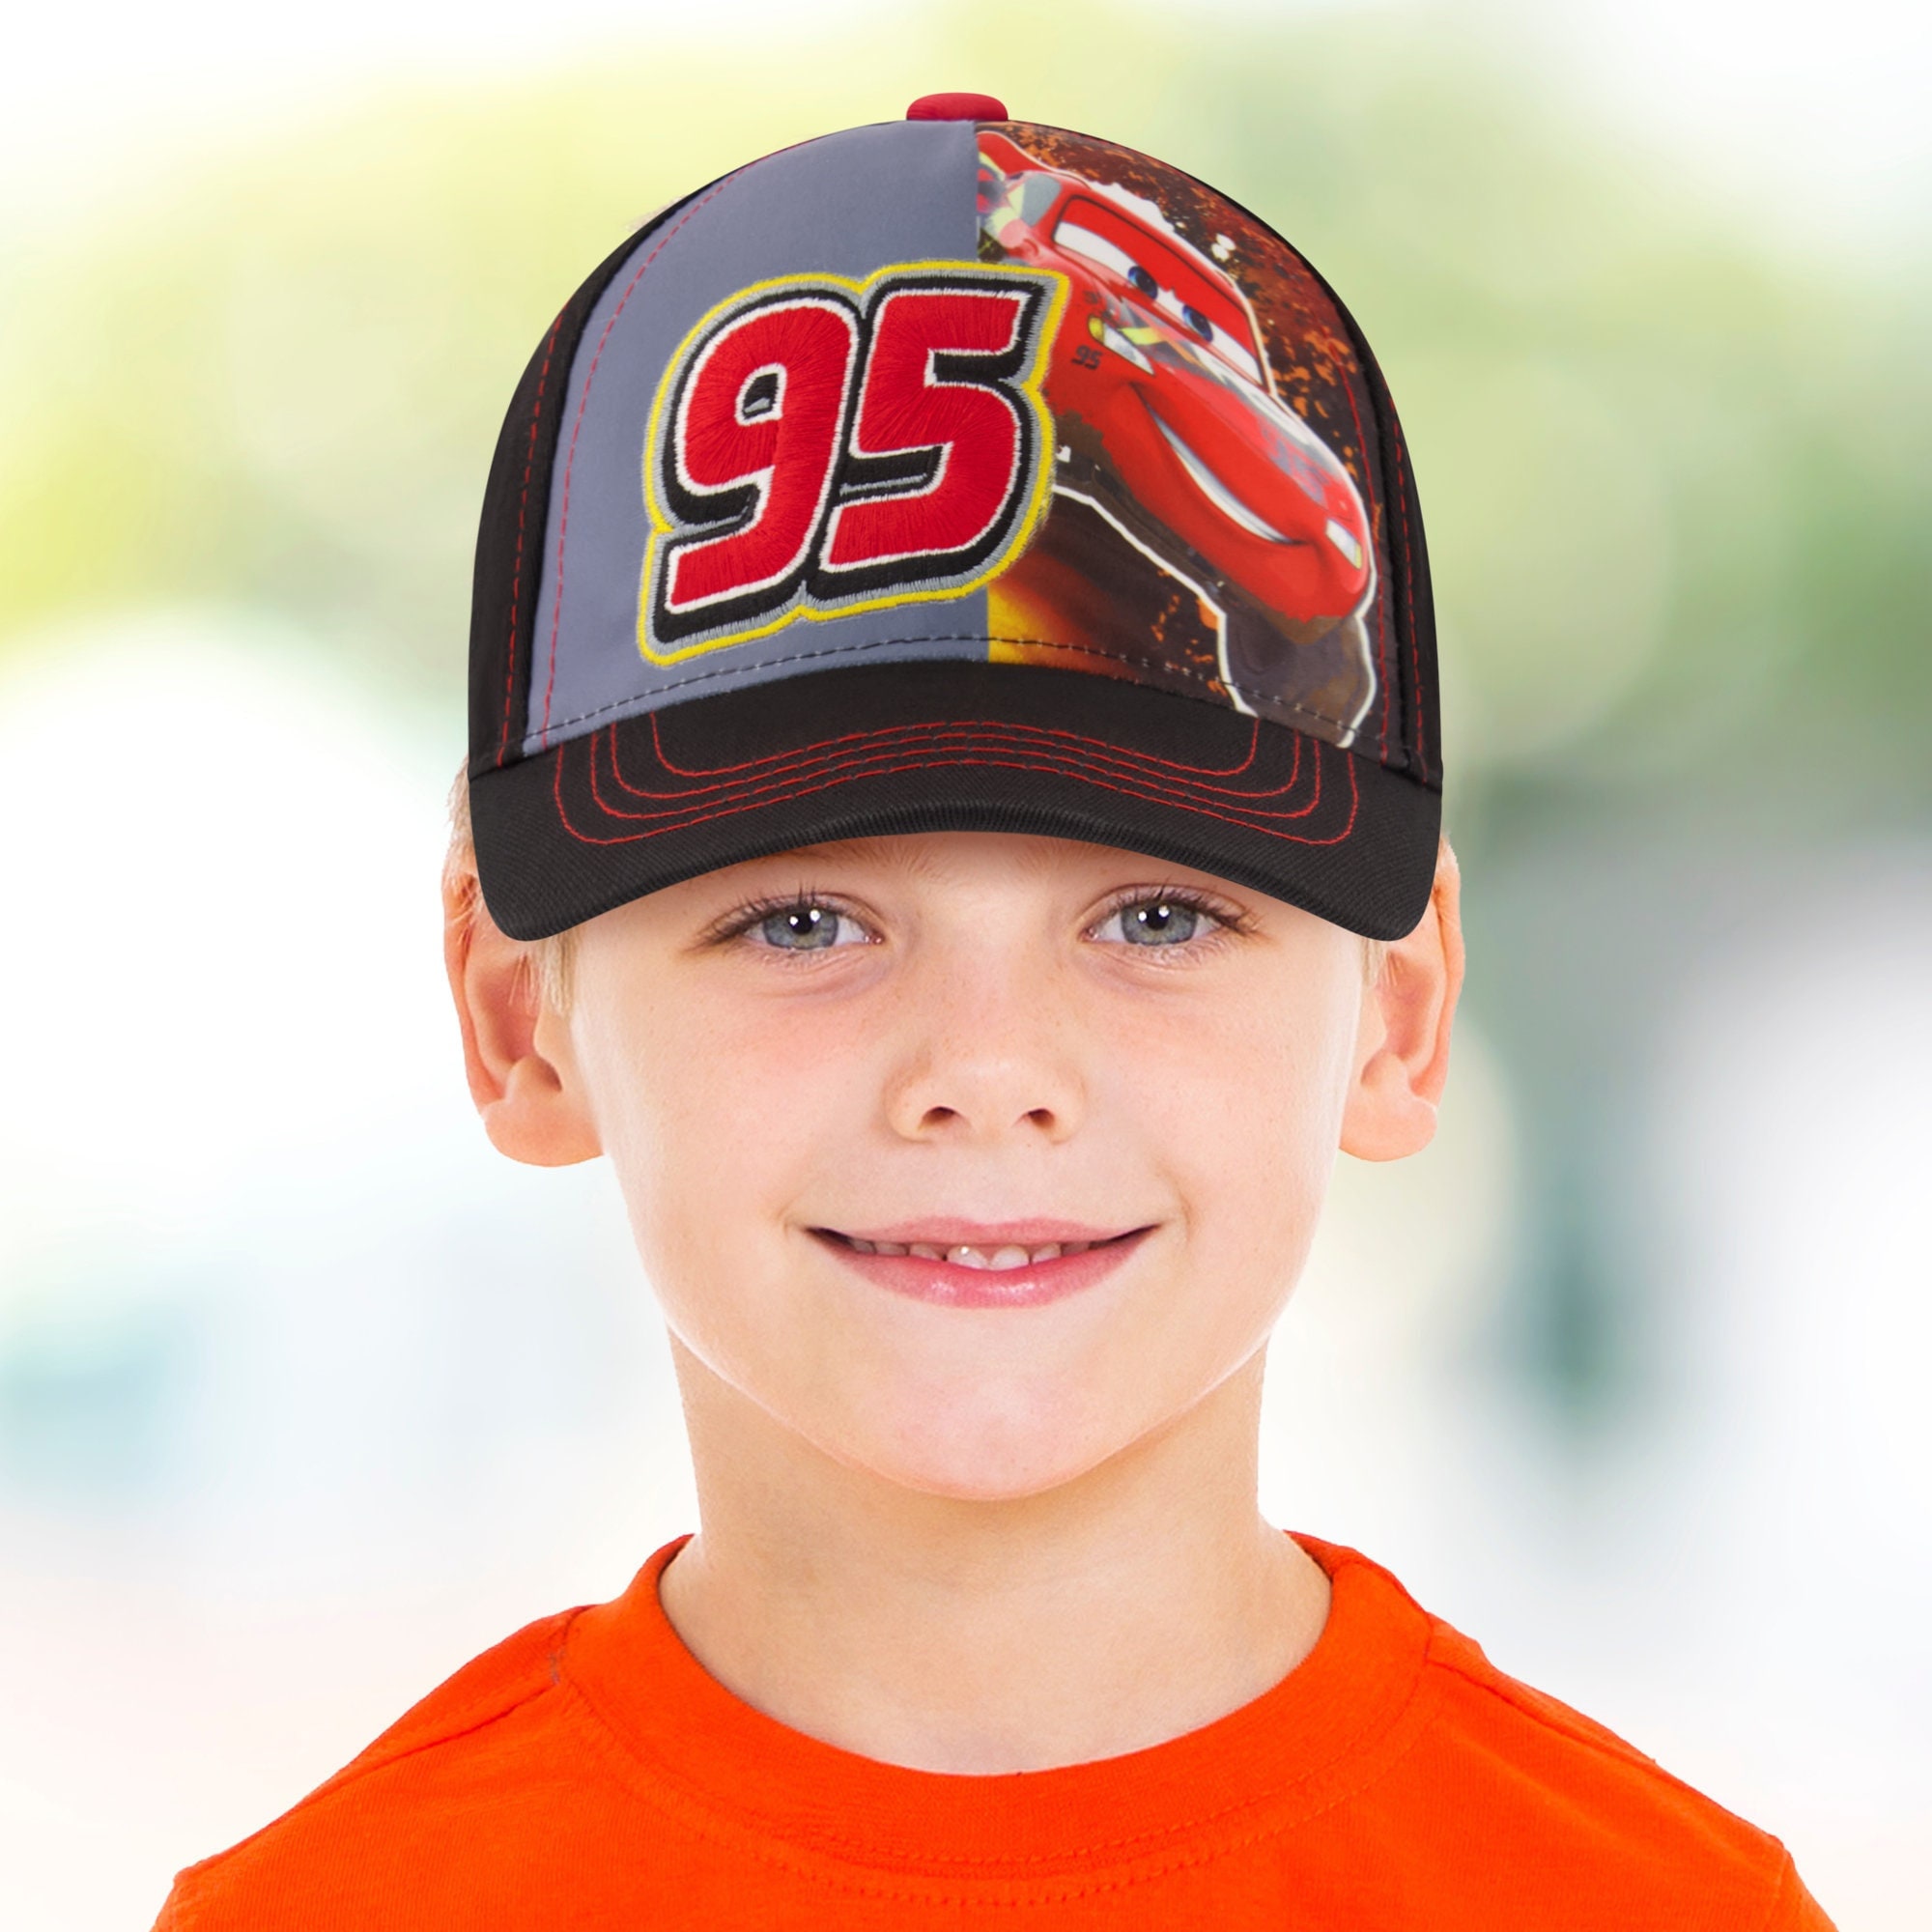 Disney Cars Toddler Baseball Hat for Boys Size 4-7 Lightning